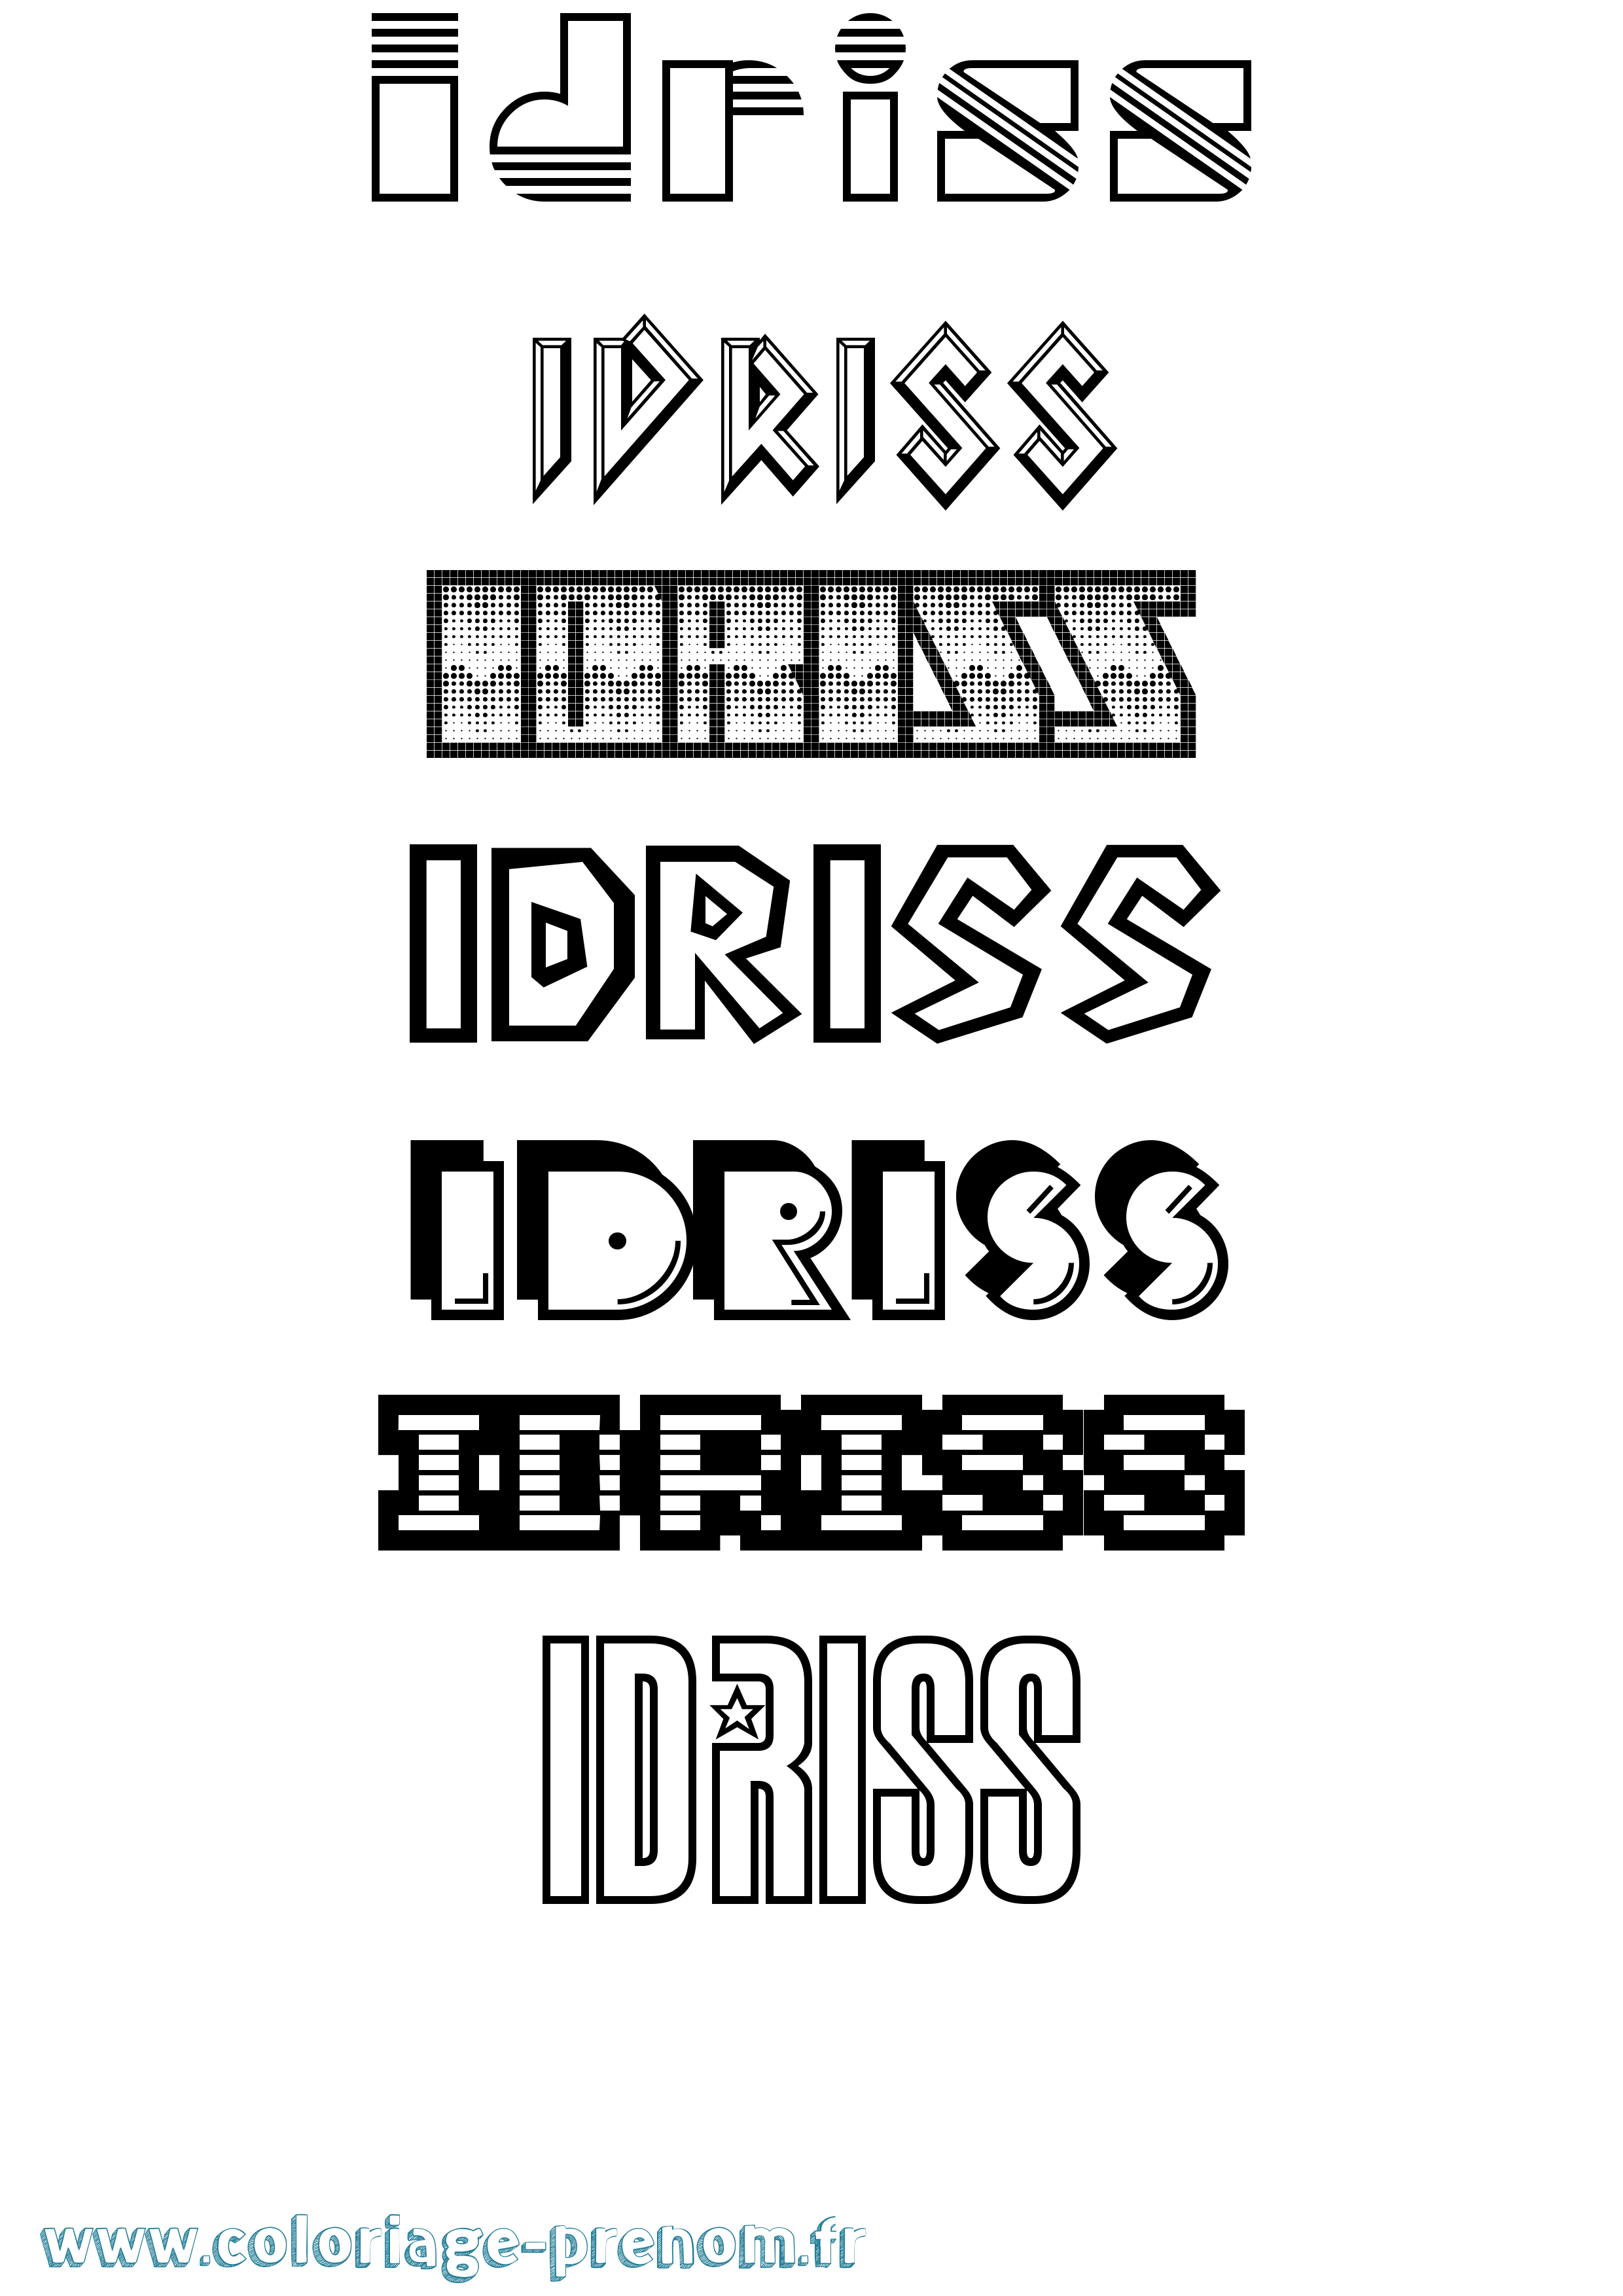 Coloriage prénom Idriss